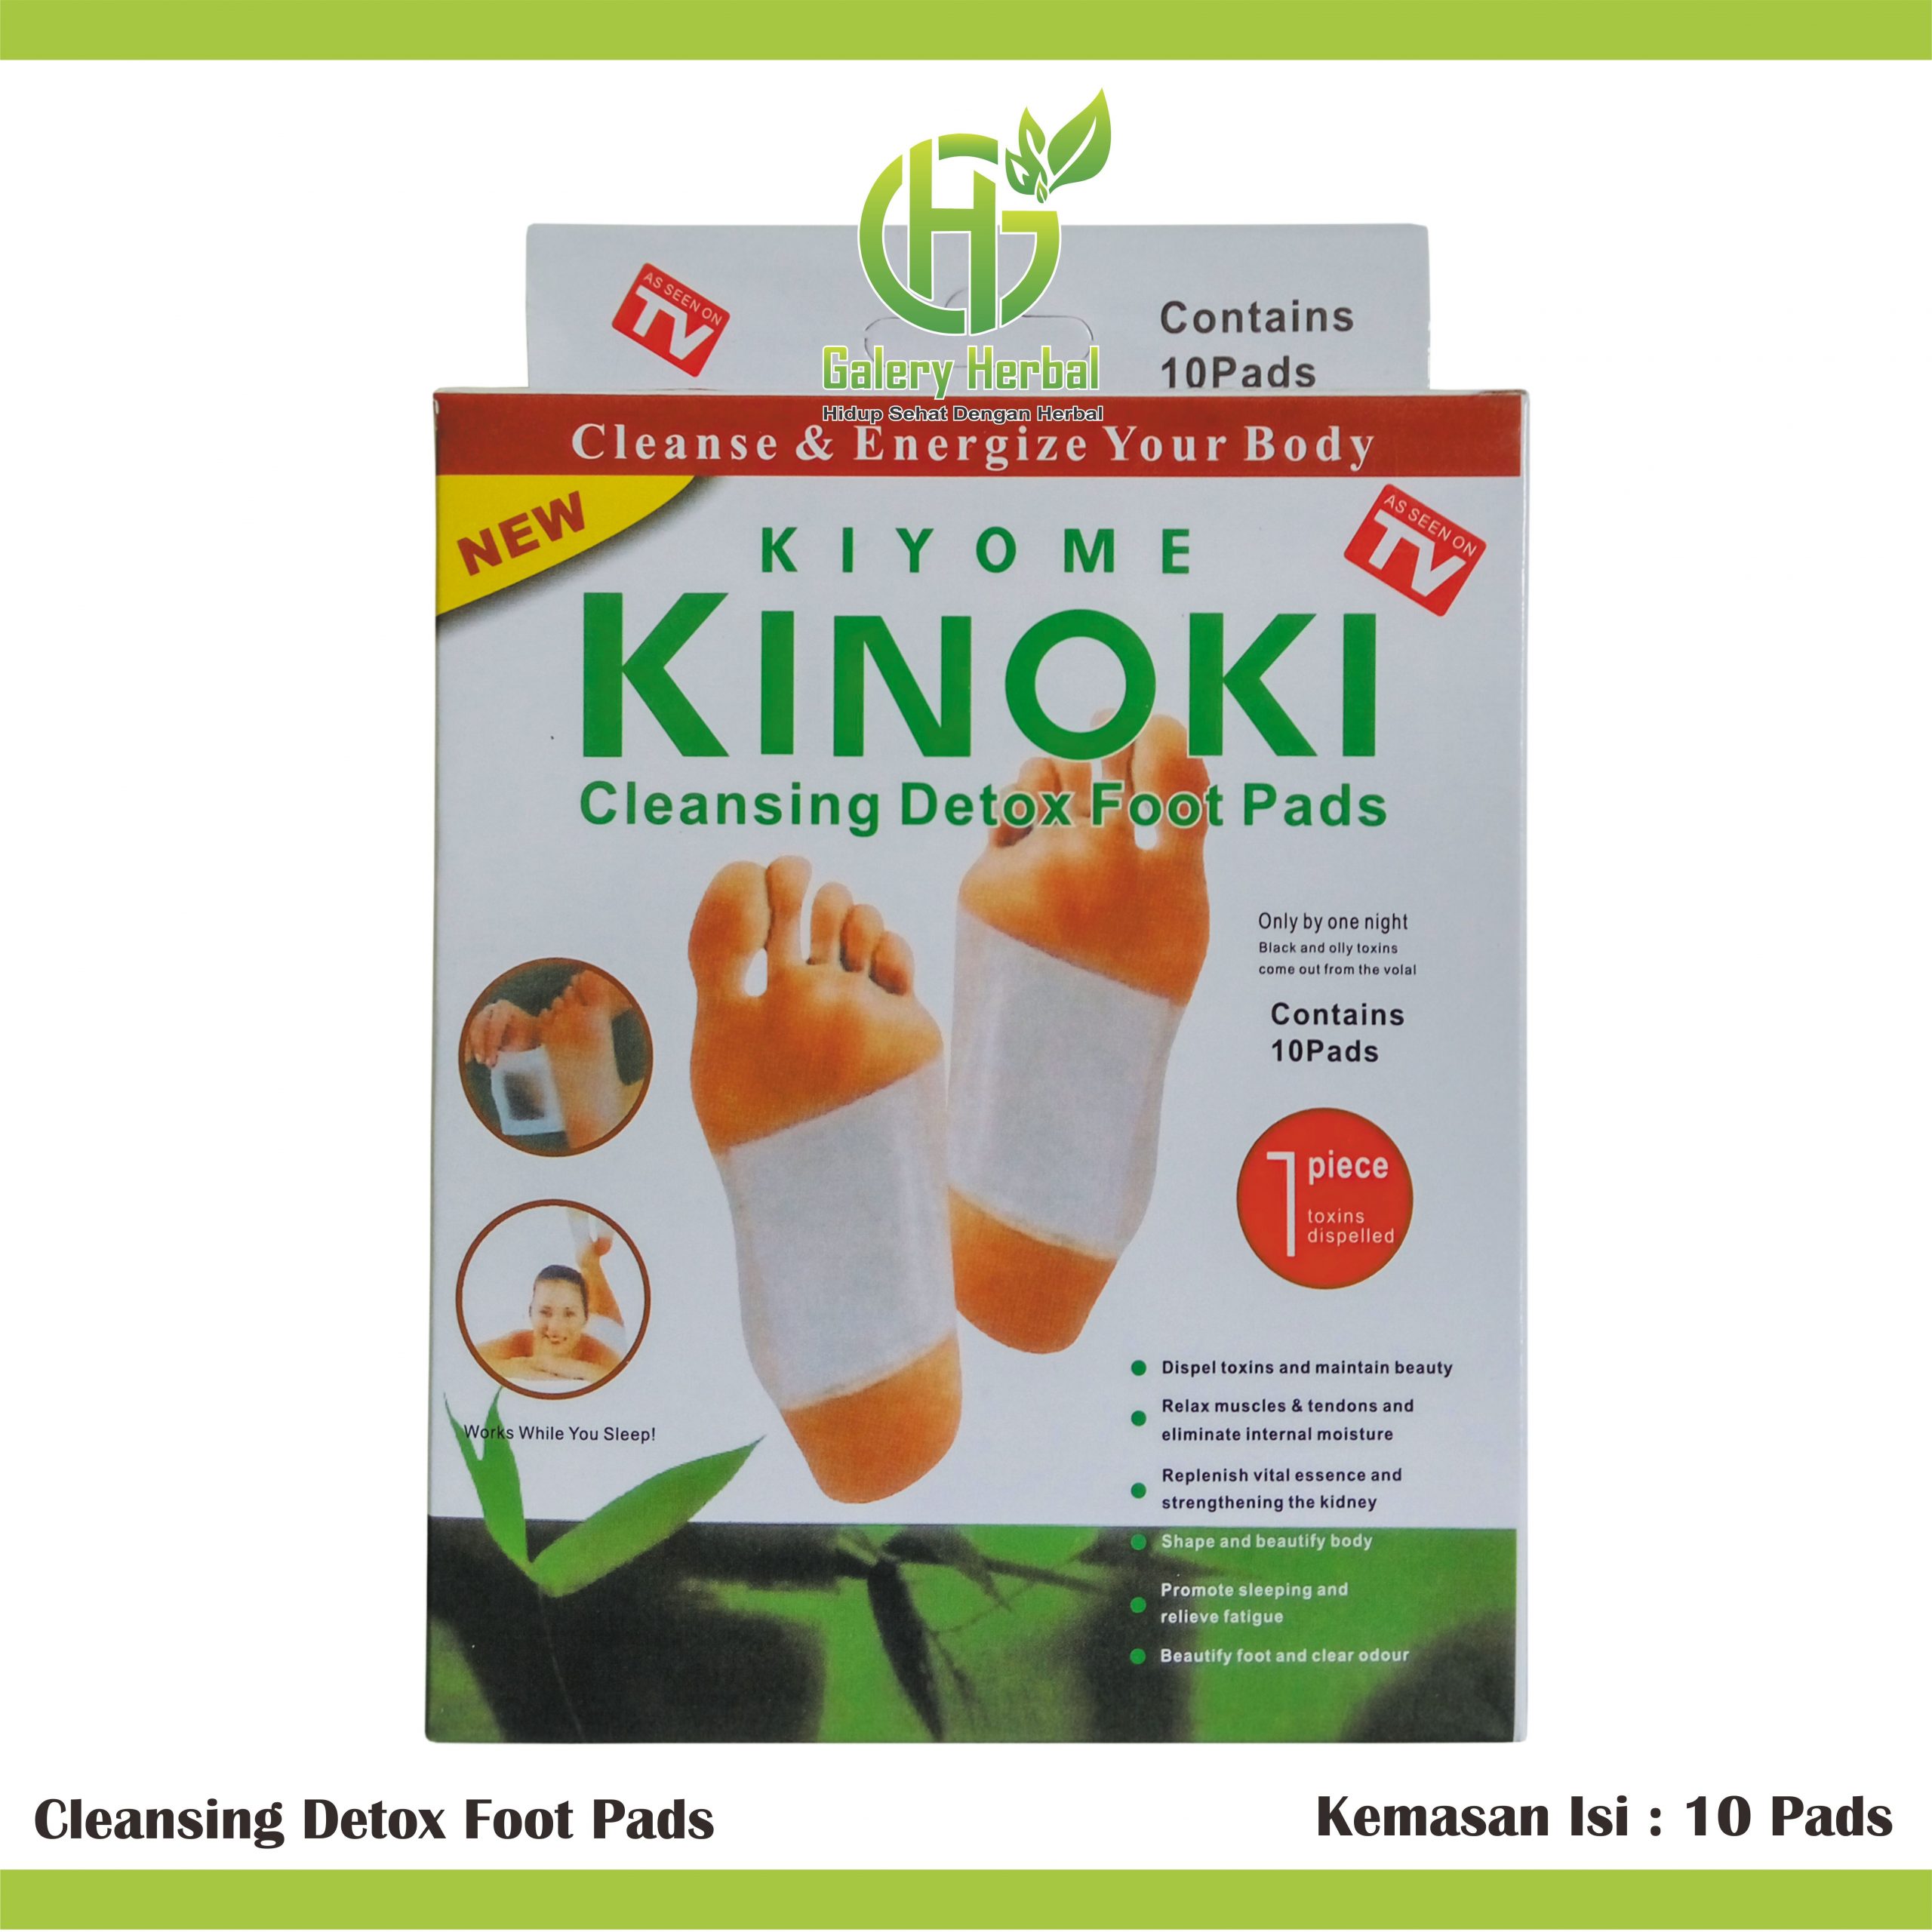 Harga Kinoki di Apotik Kimia Farma Beserta Kegunaannya